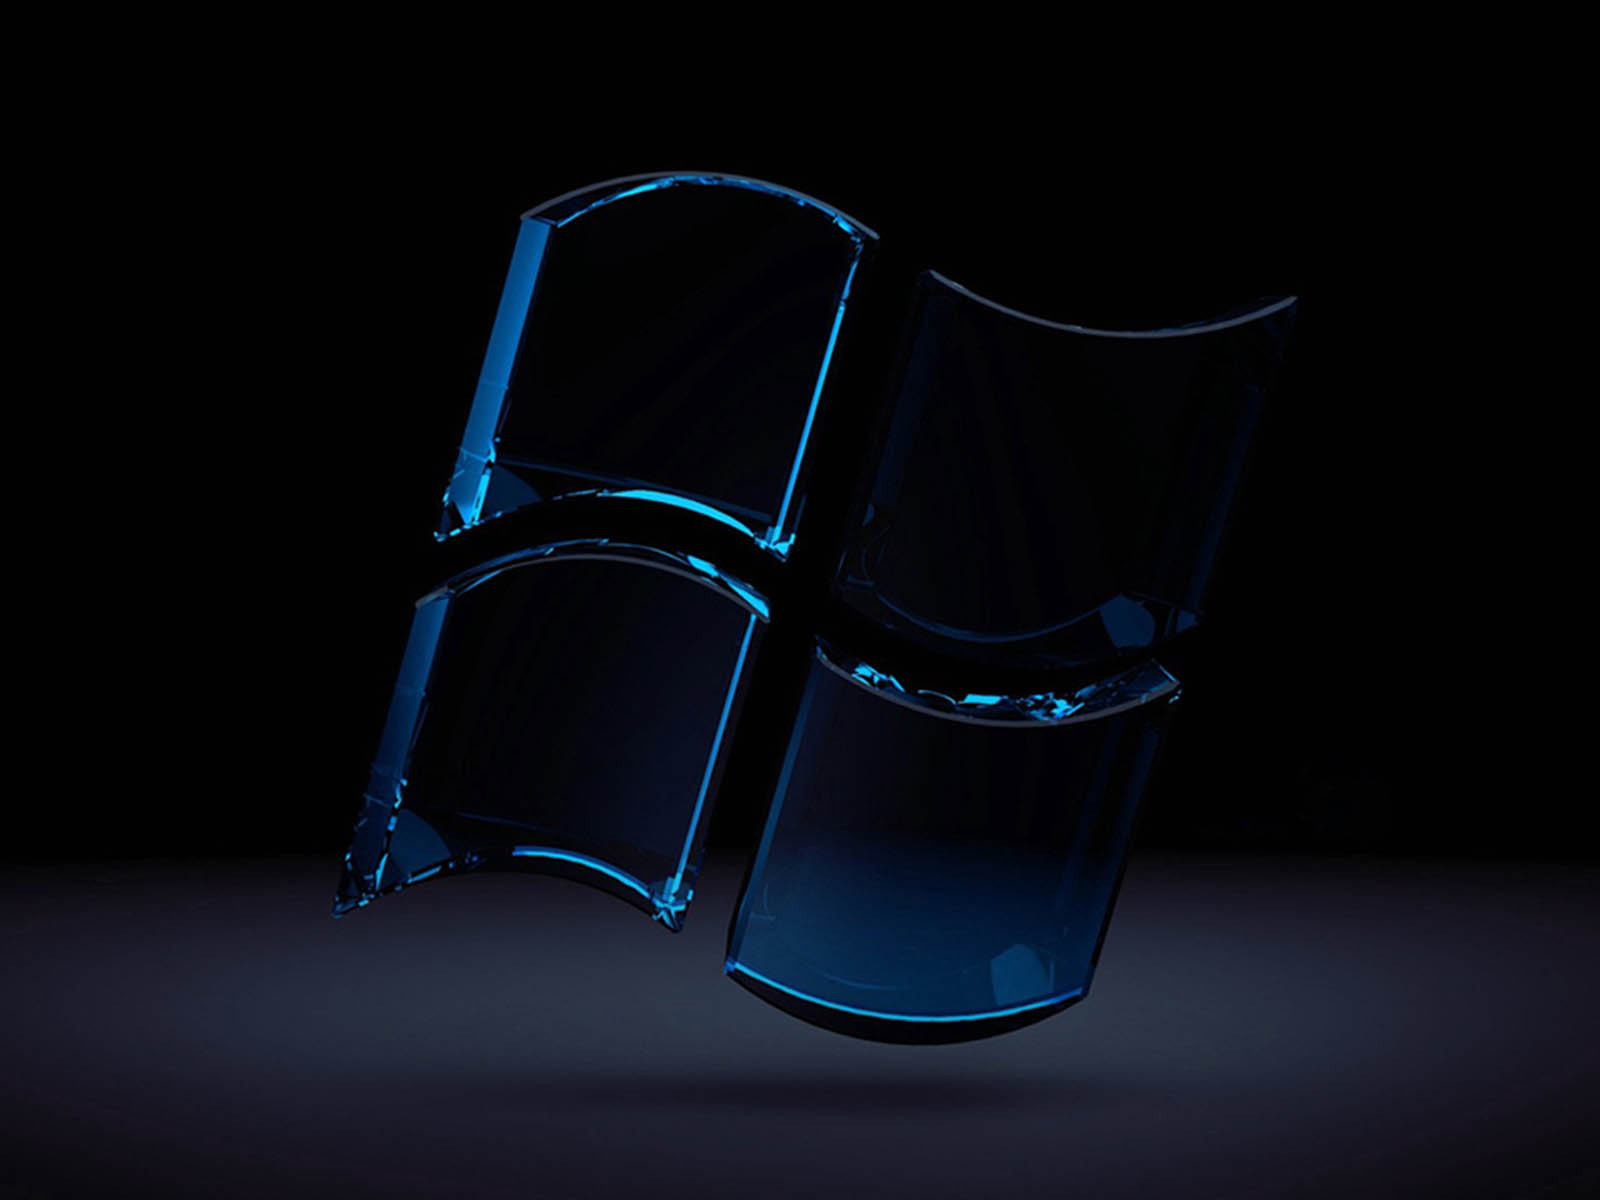 papel pintado para vidrio,material transparente,fotografía de naturaleza muerta,azul cobalto,vaso,silla